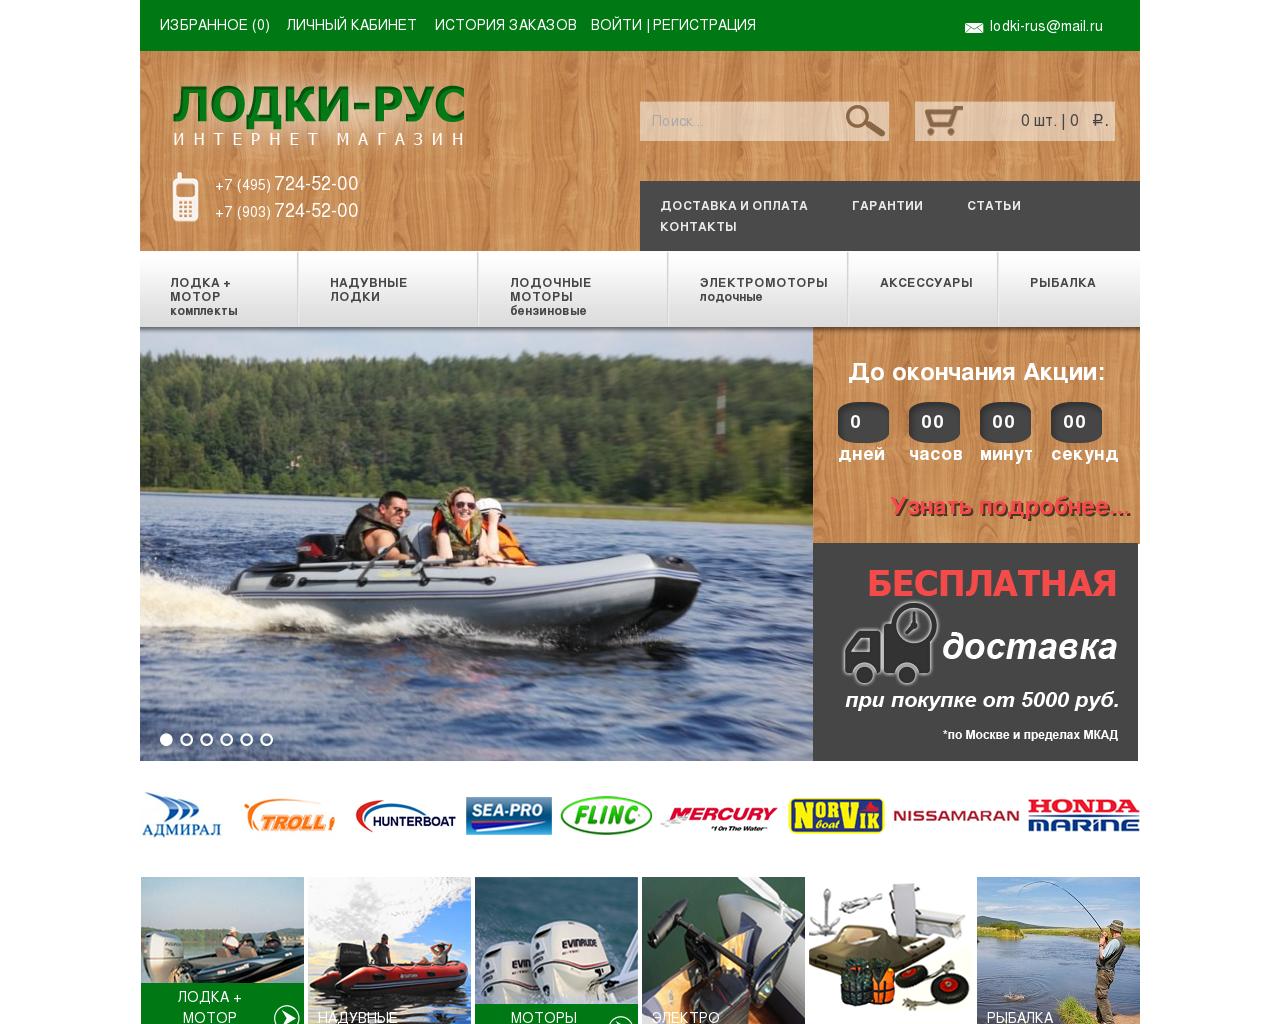 Изображение сайта лодки-рус.рф в разрешении 1280x1024